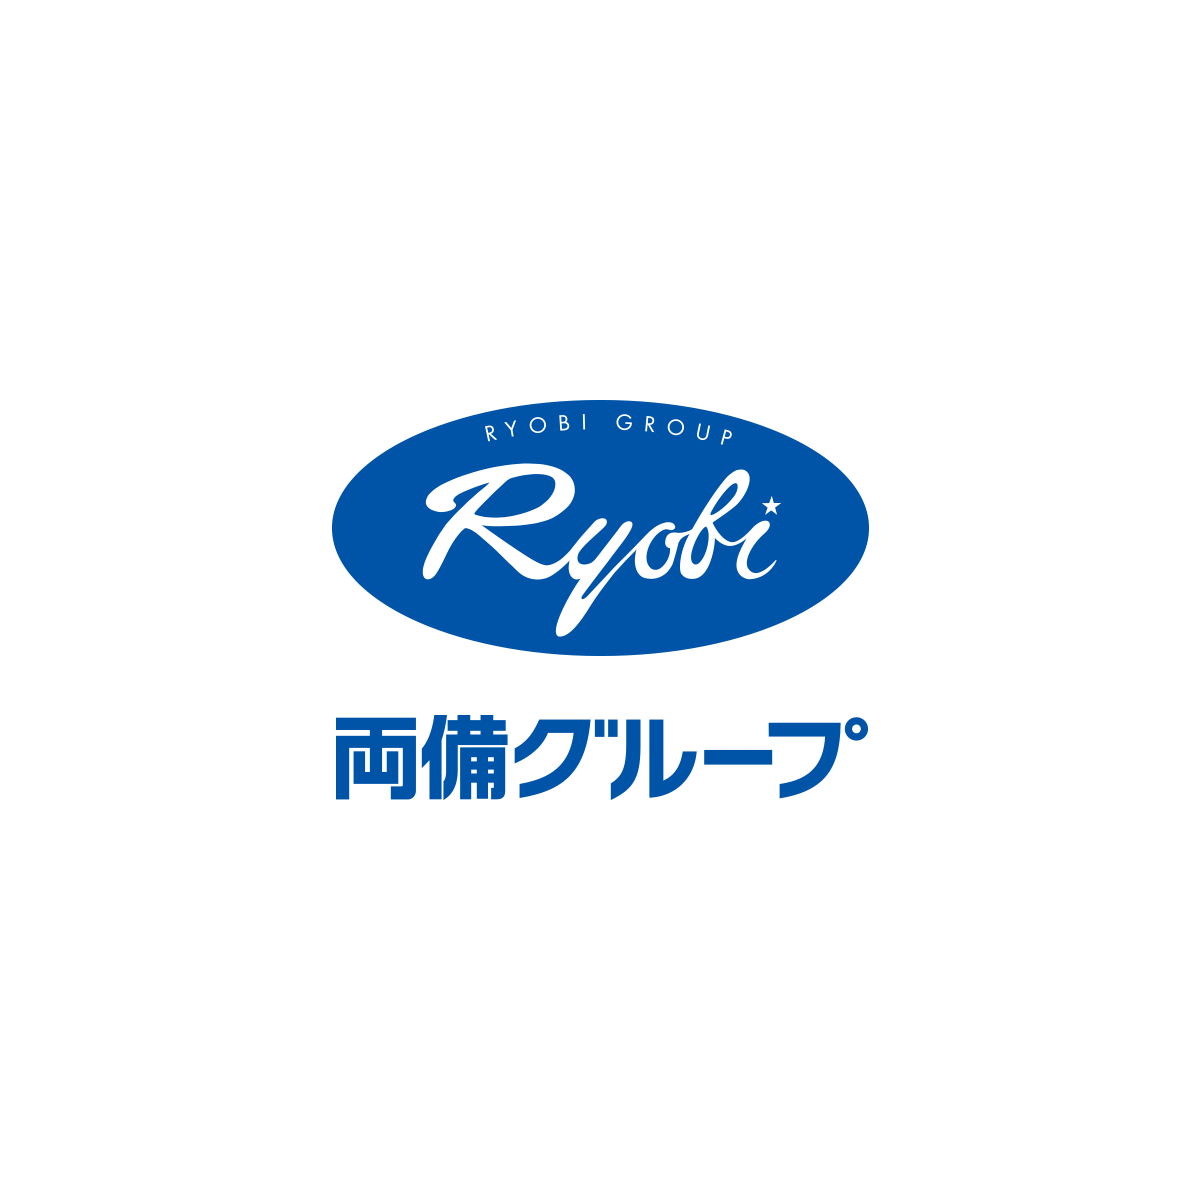 ストライキ通告書及び労使協議の結果について（両備ホールディングス） | 両備グループ ポータルサイト - Ryobi Group -